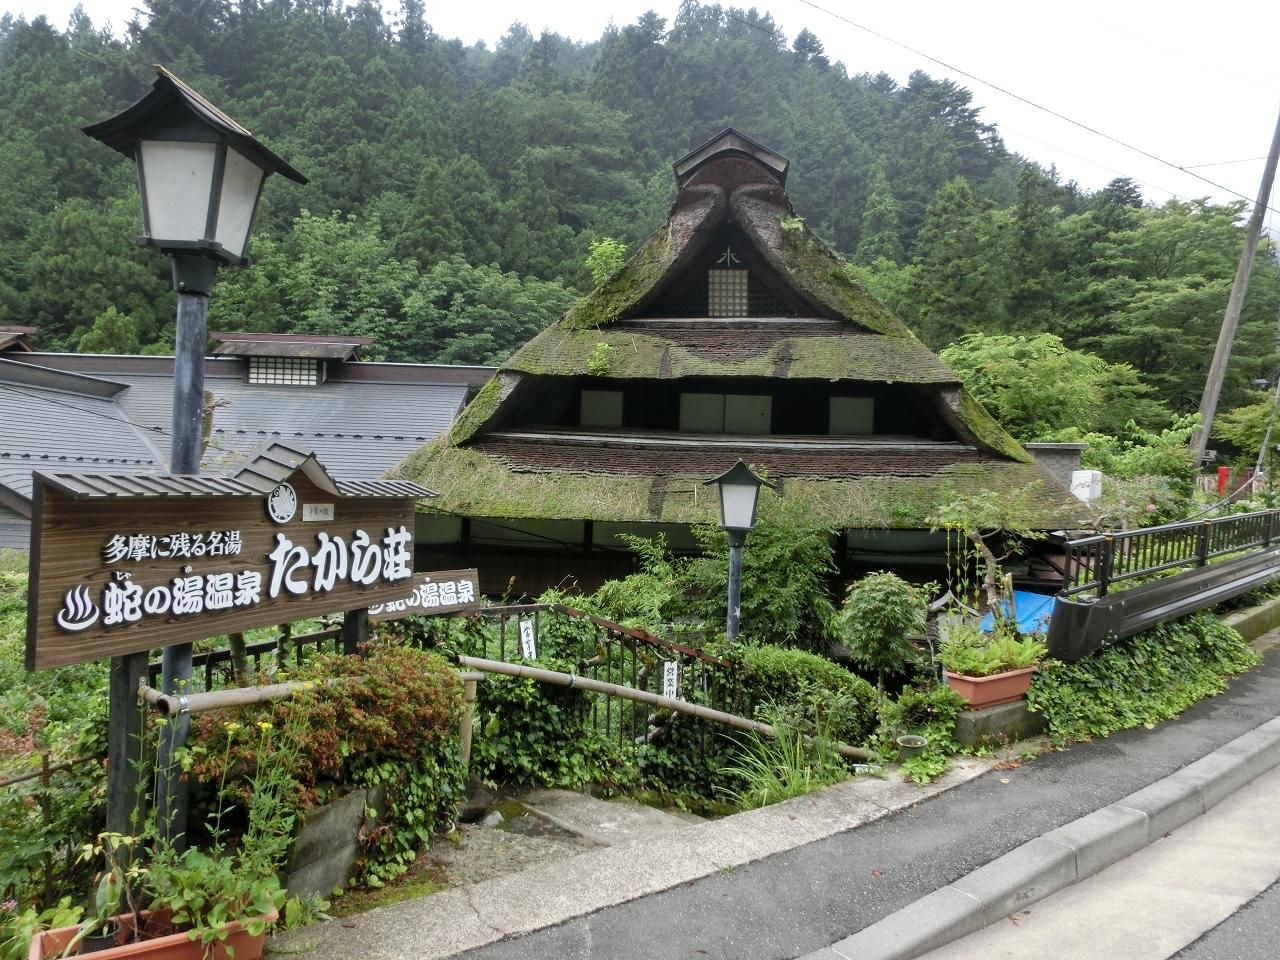 東京で秘湯を見つけました！檜原村の珍しい兜造りのお宿「蛇の湯温泉